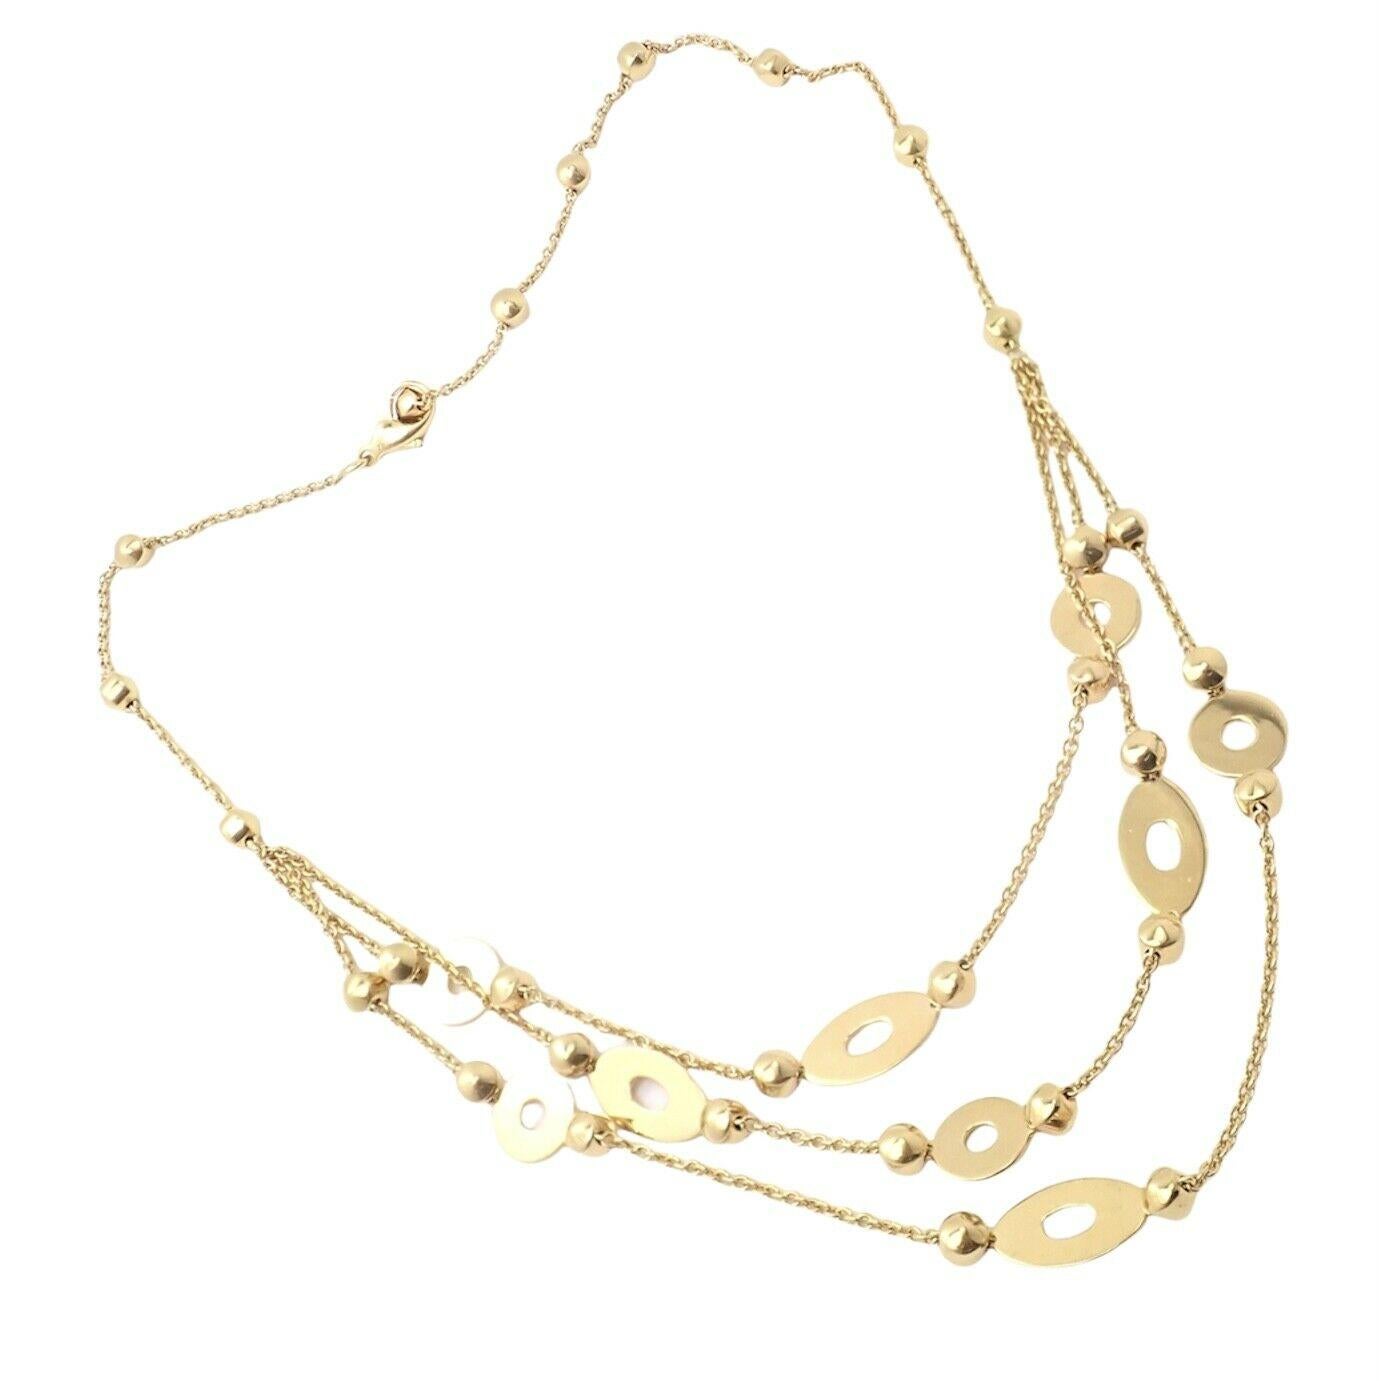 18k Gelbgold Lucea dreireihige Halskette von Bulgari.
Einzelheiten:
Länge: Einstellbar: 18